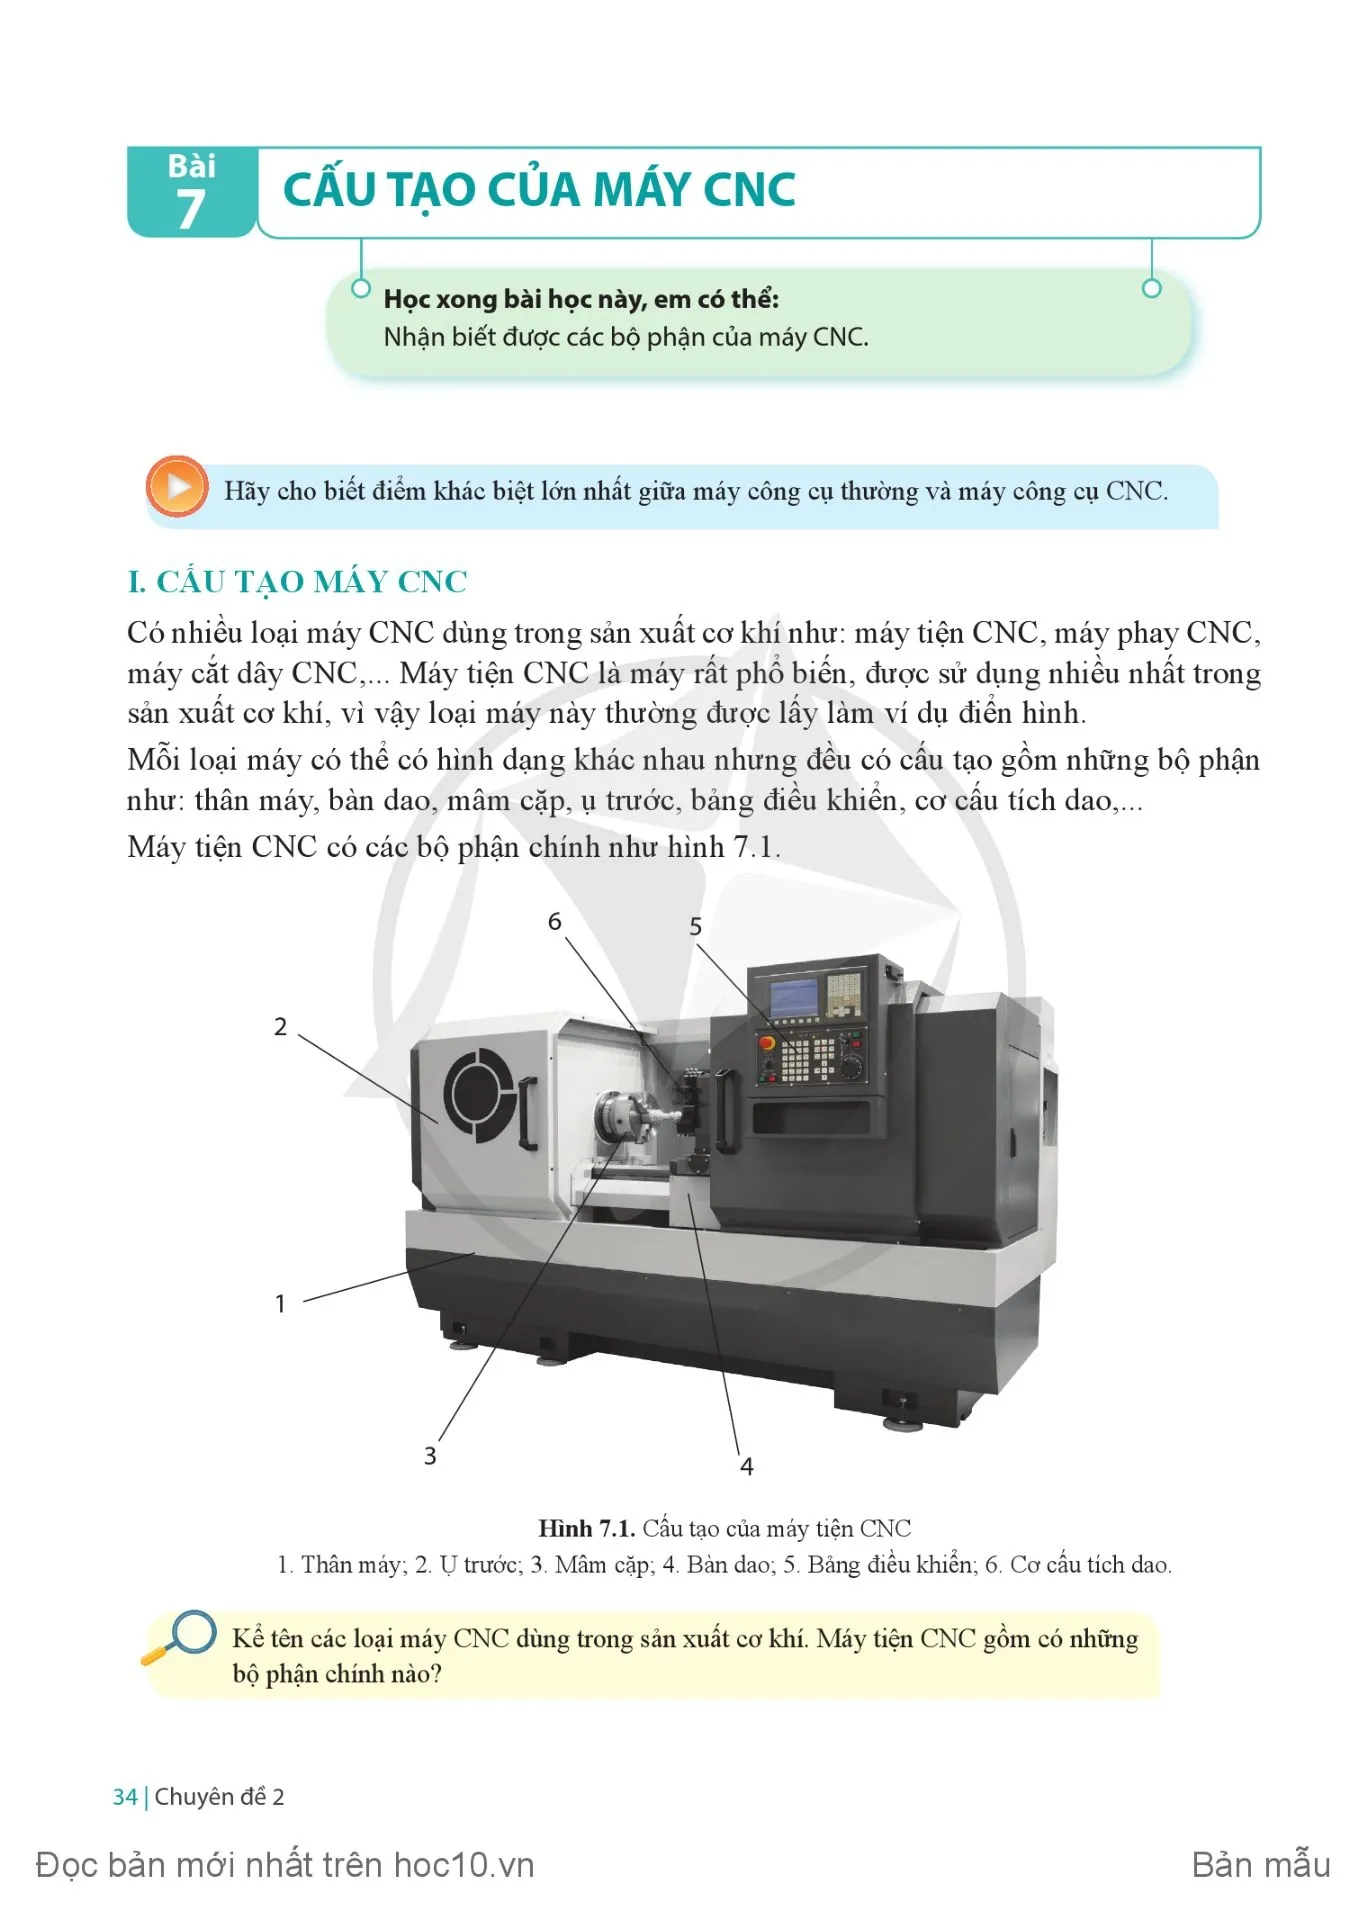 Bài 7 Cấu tạo của máy CNC